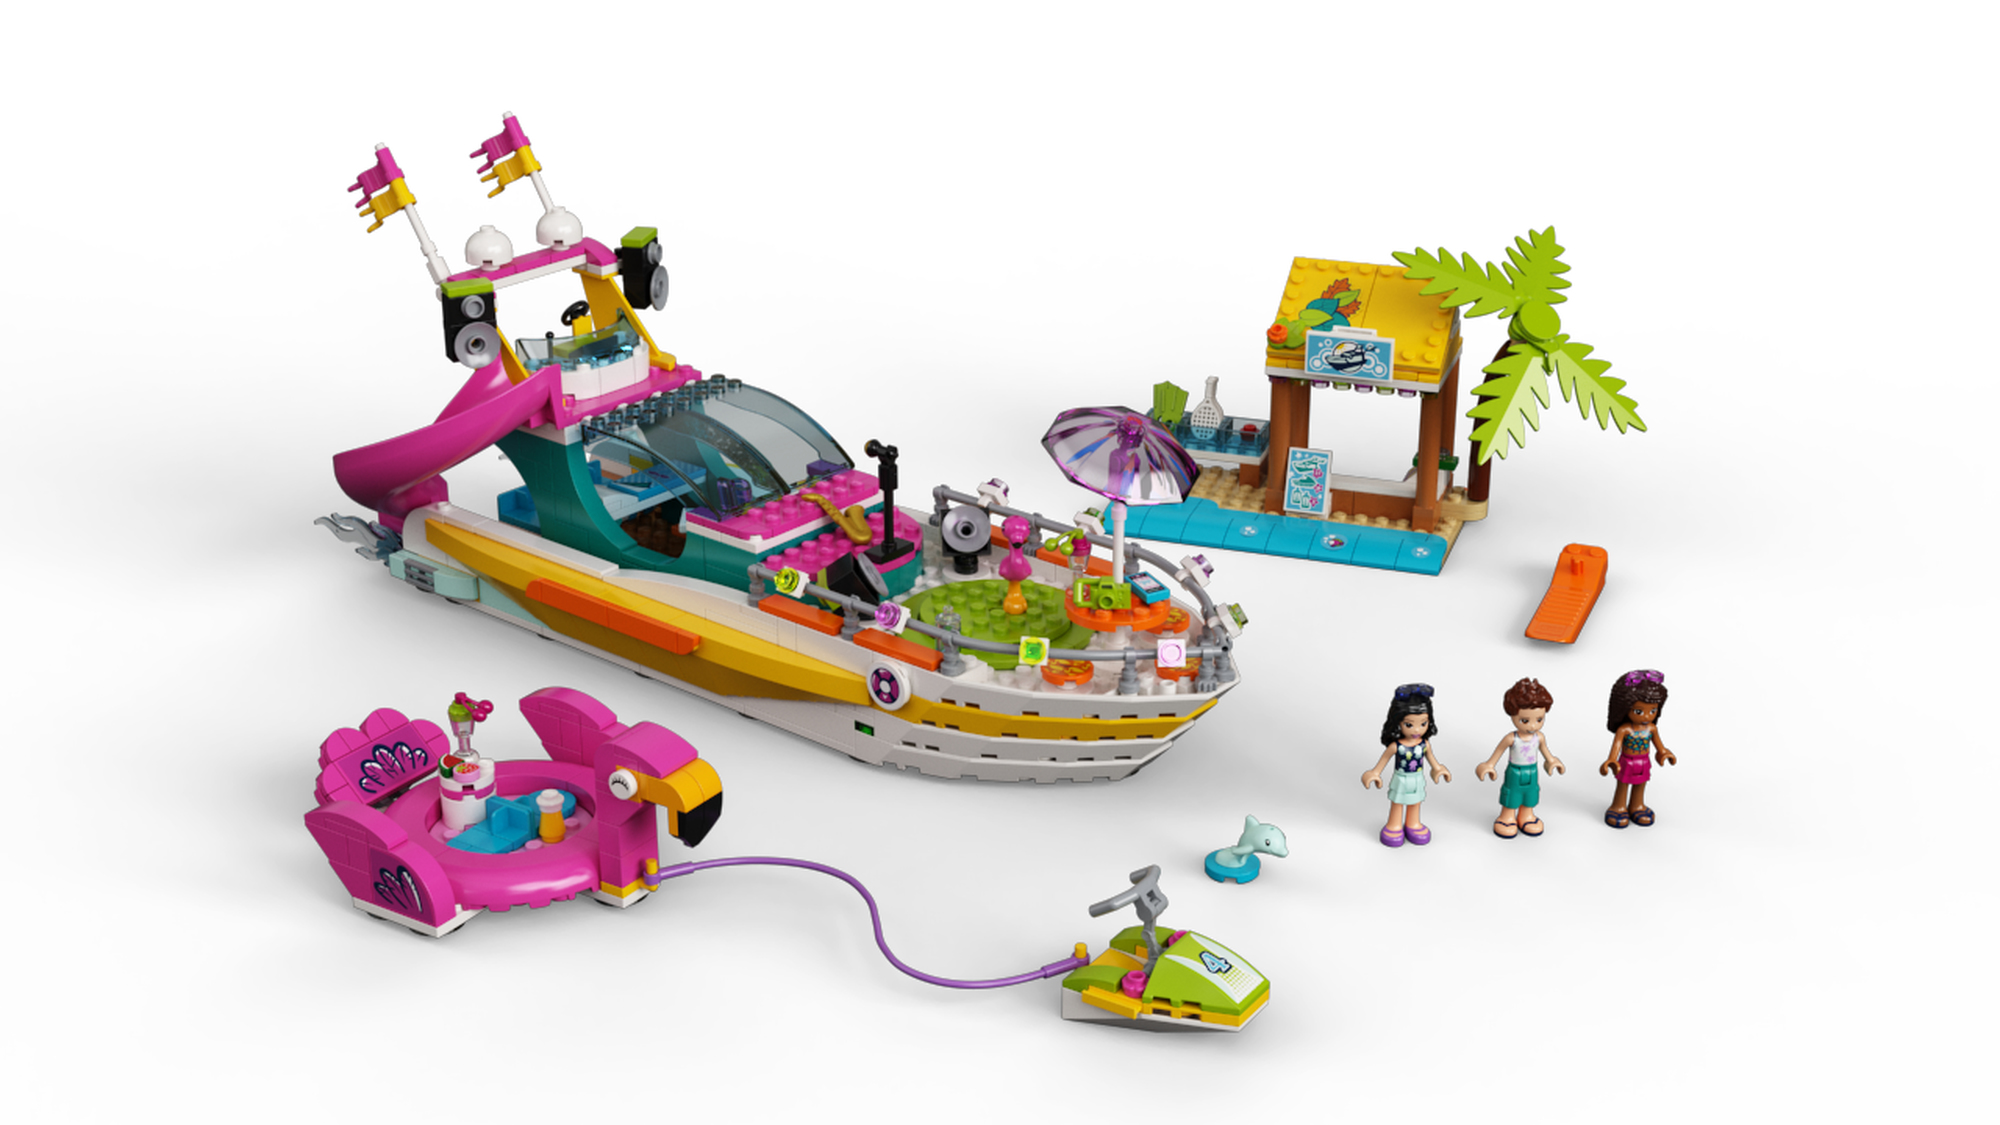 LEGO 41433 Party Boat | 5702016686869 BRICKshop en | DUPLO specialist LEGO 